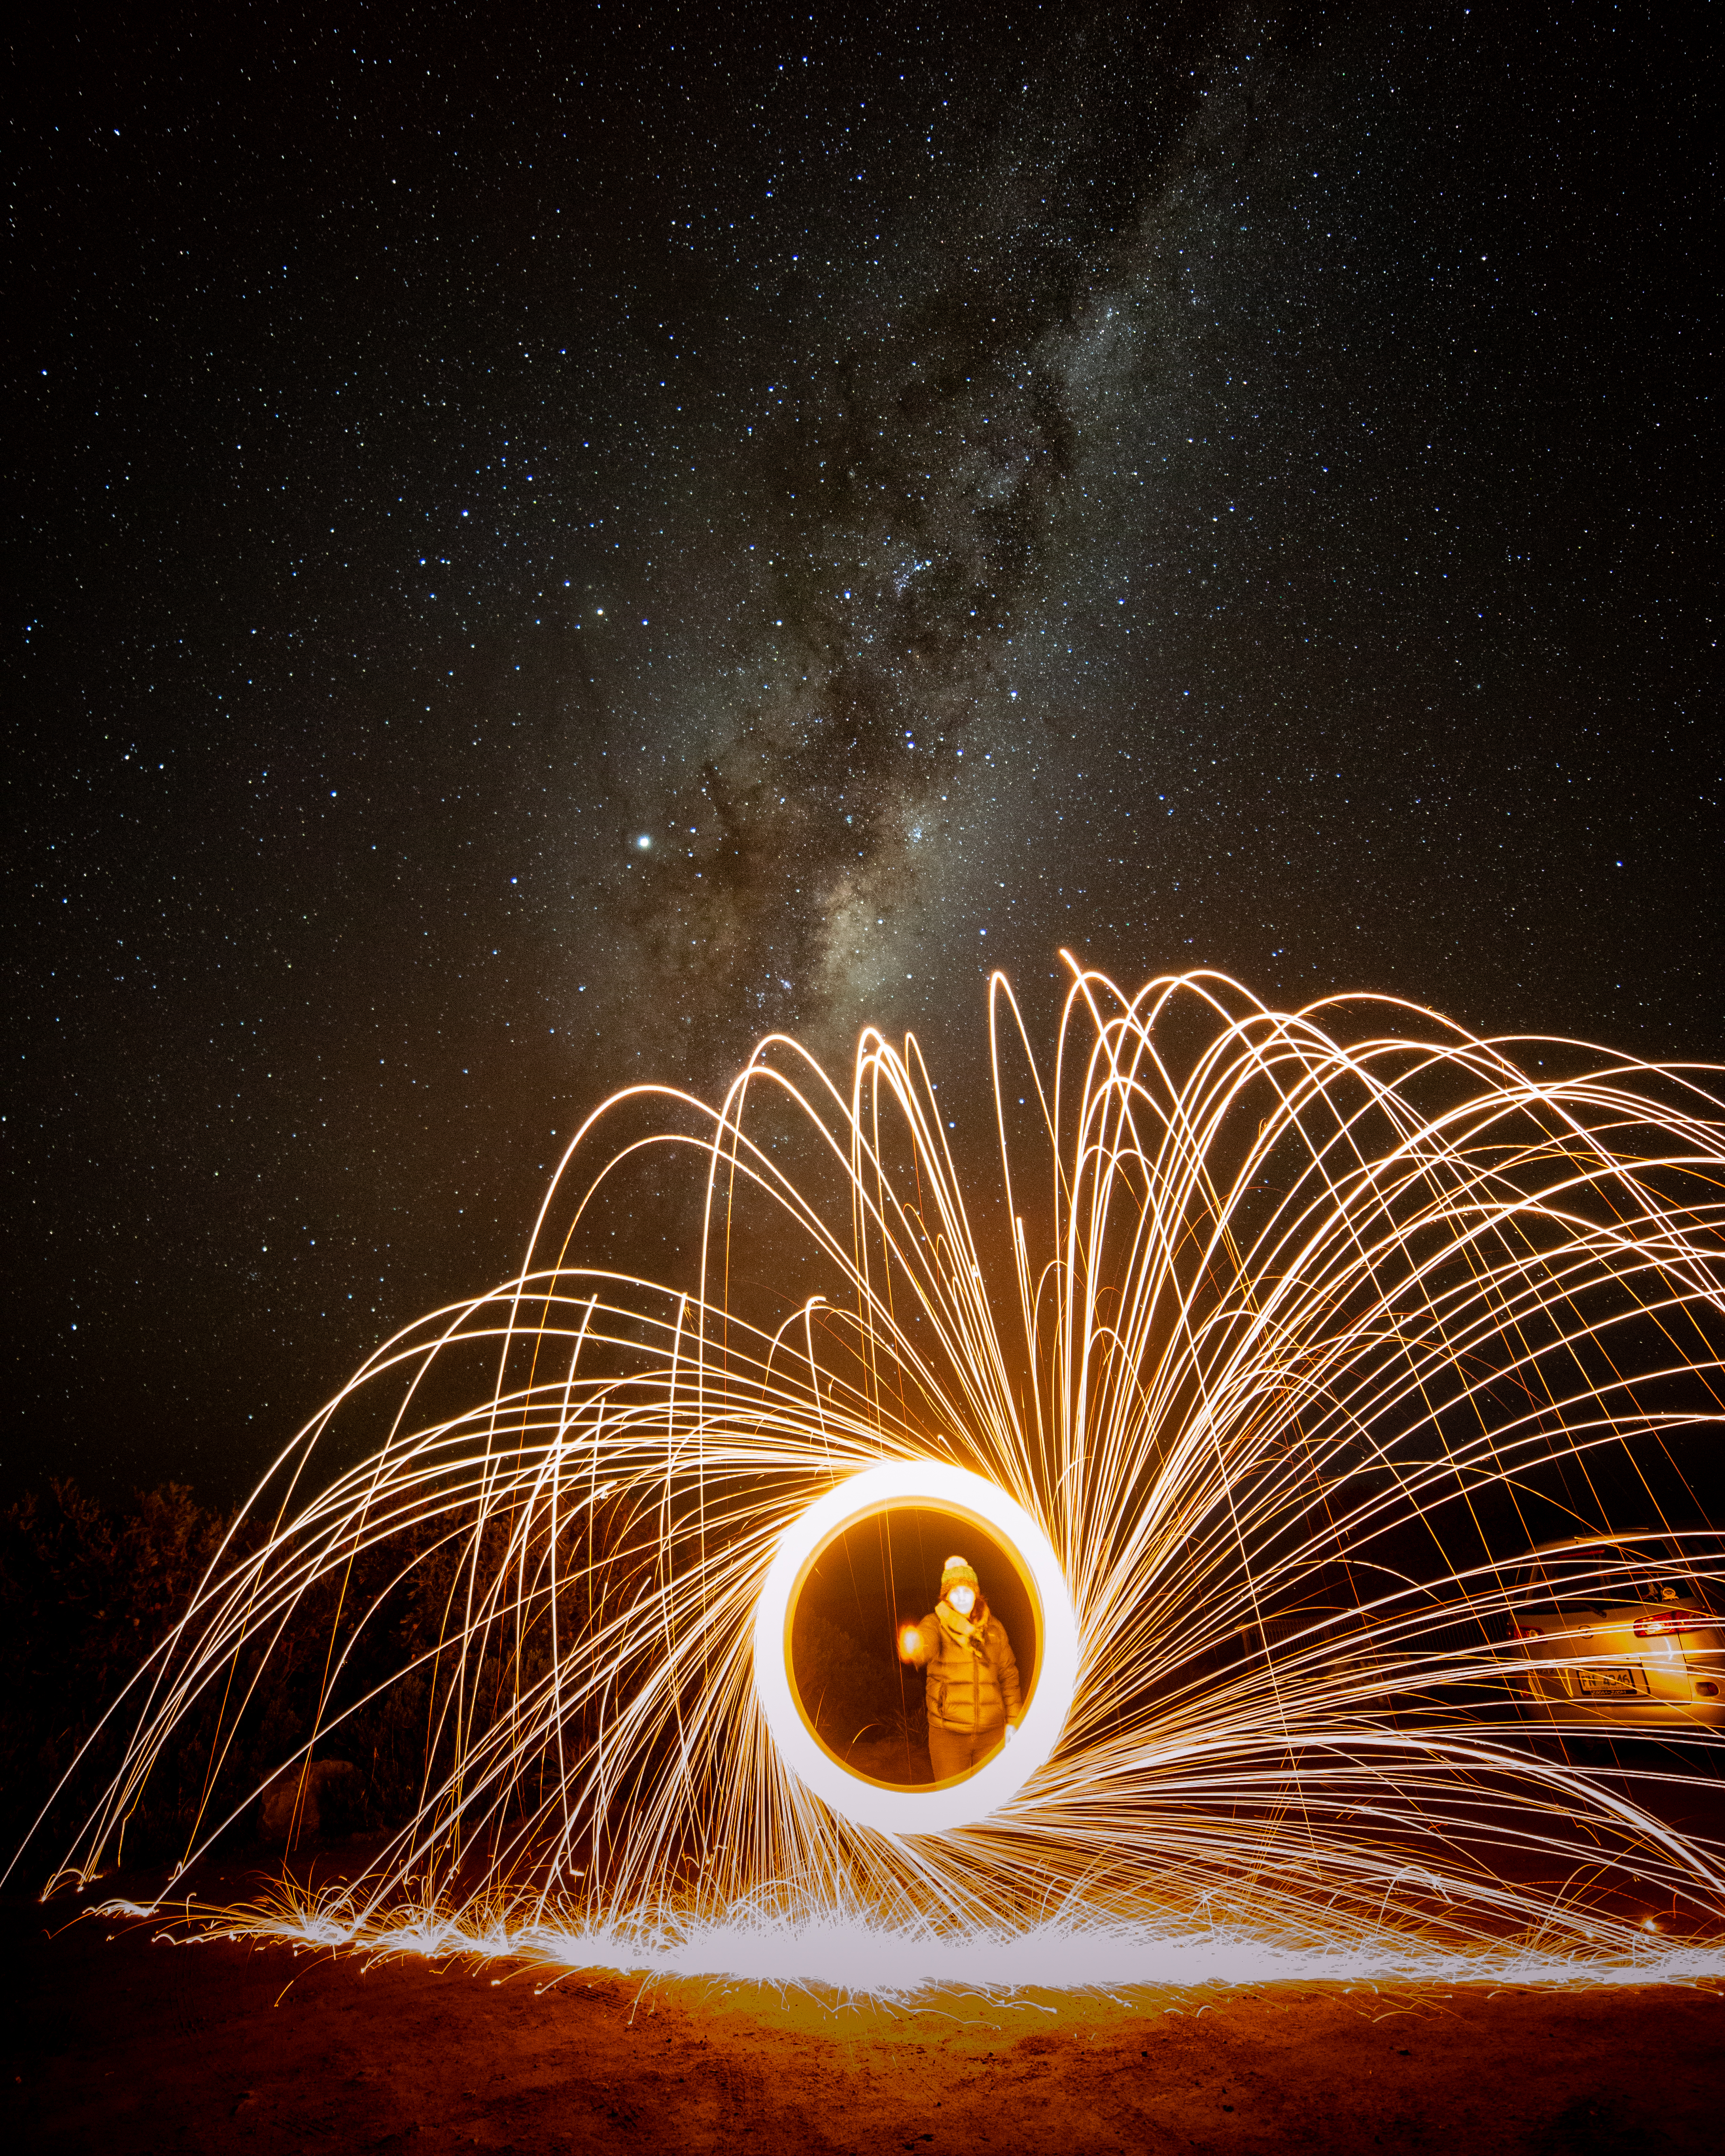 General 3648x4560 long exposure Milky Way fireworks light painting landscape Tasmania steel wool